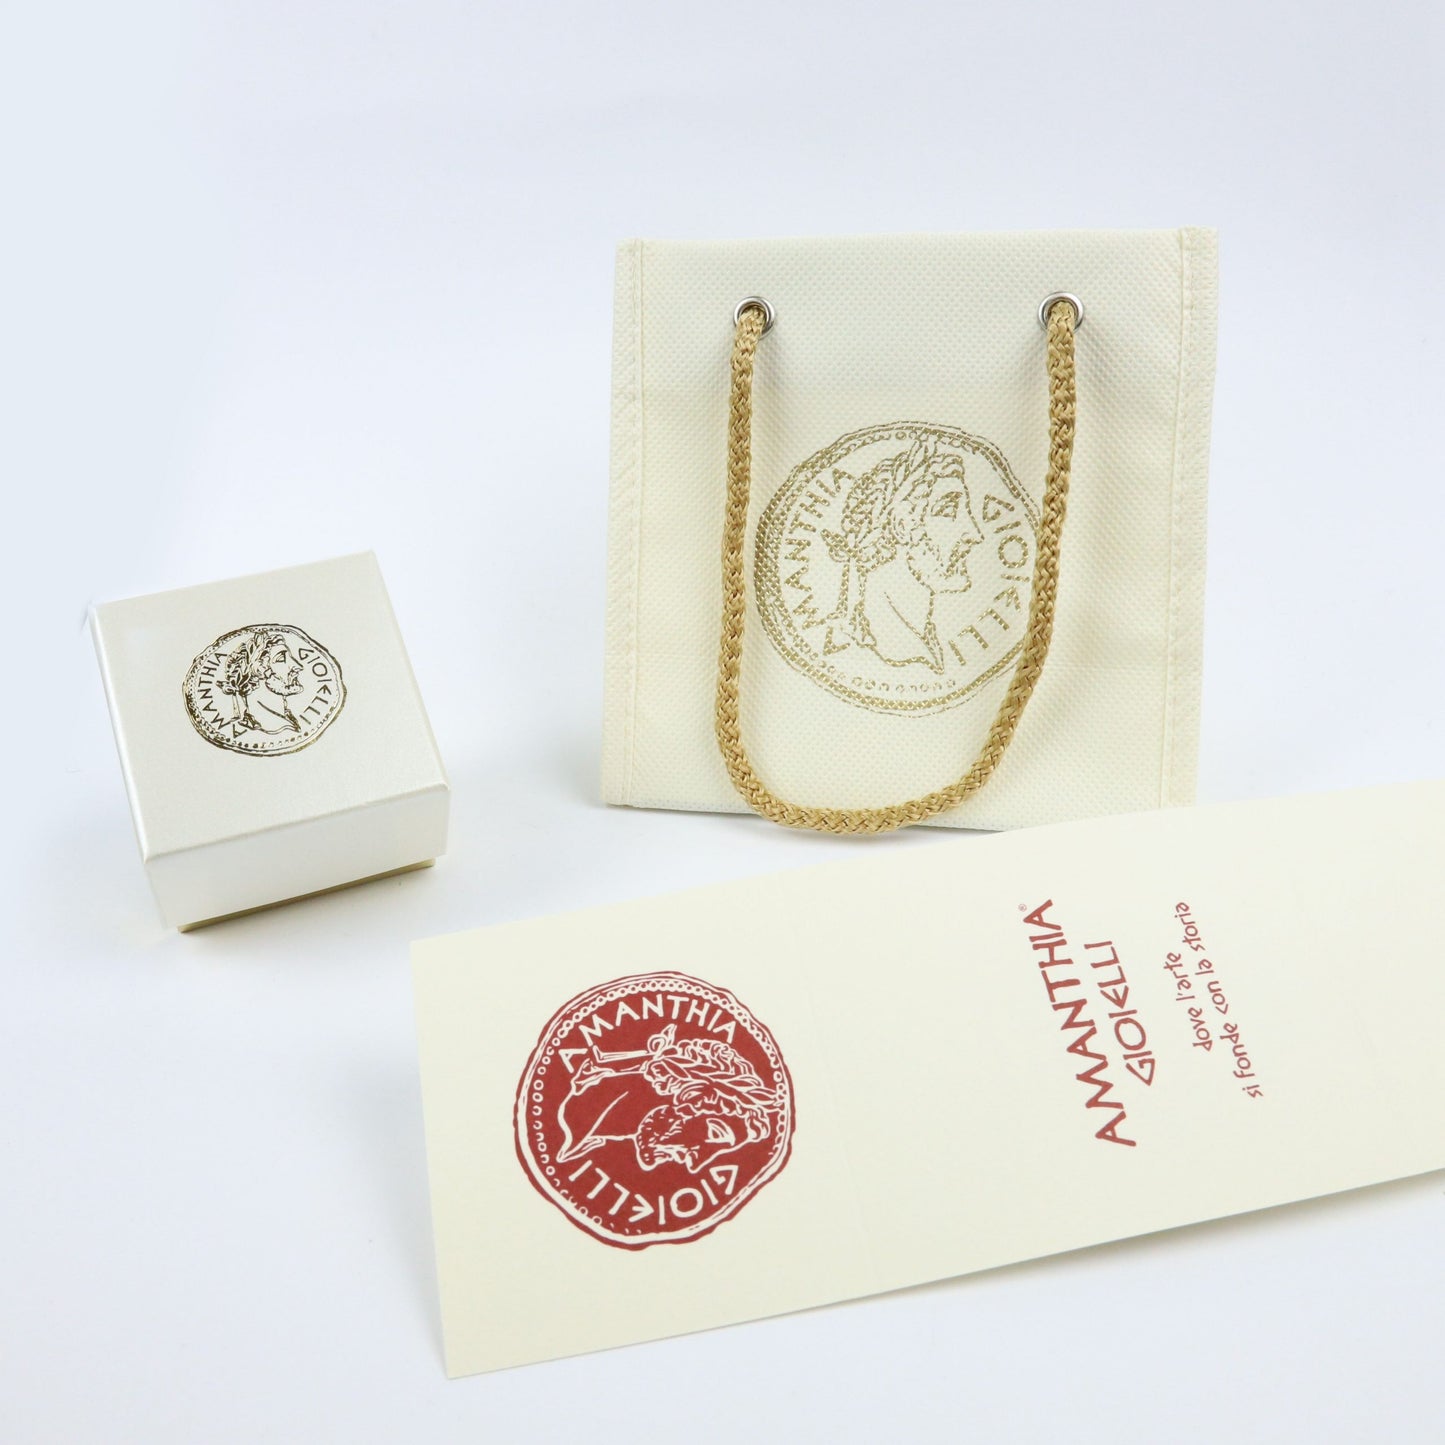 Bracciale con moneta rosè e dorata - BR.054  Amanthia   